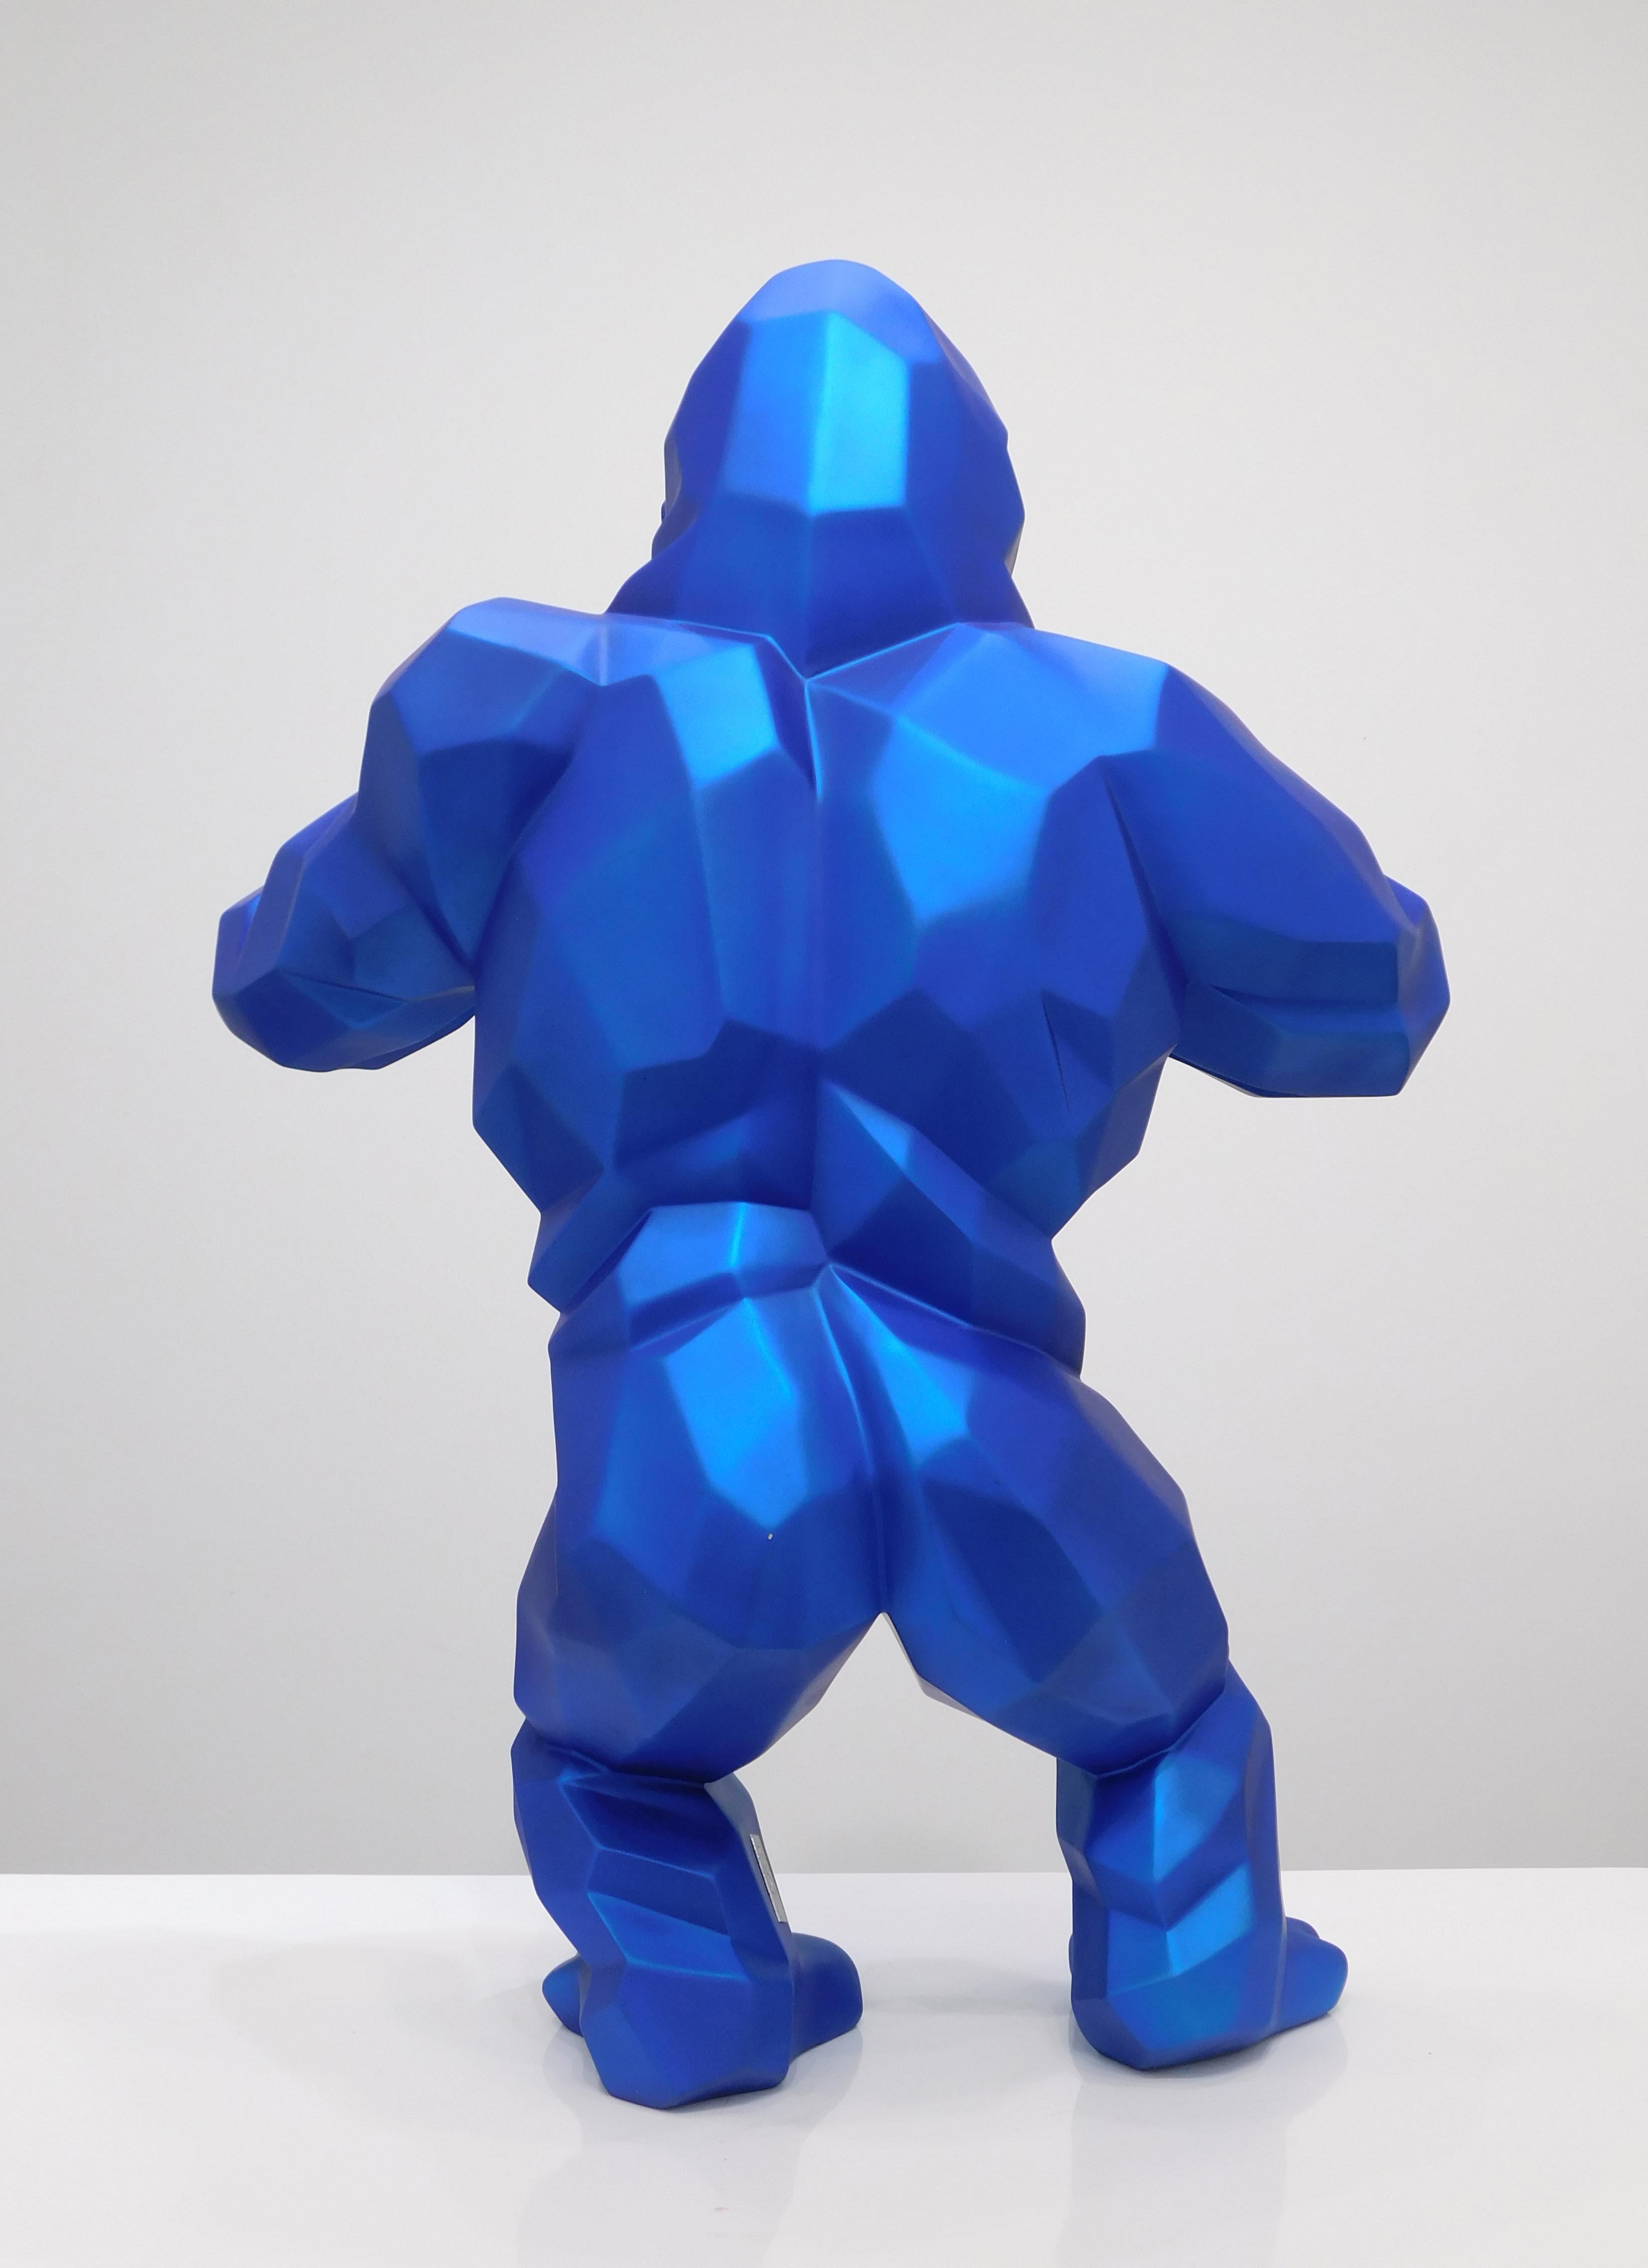 Wild Kong - Metallic Blue - Sculpture by Richard Orlinski